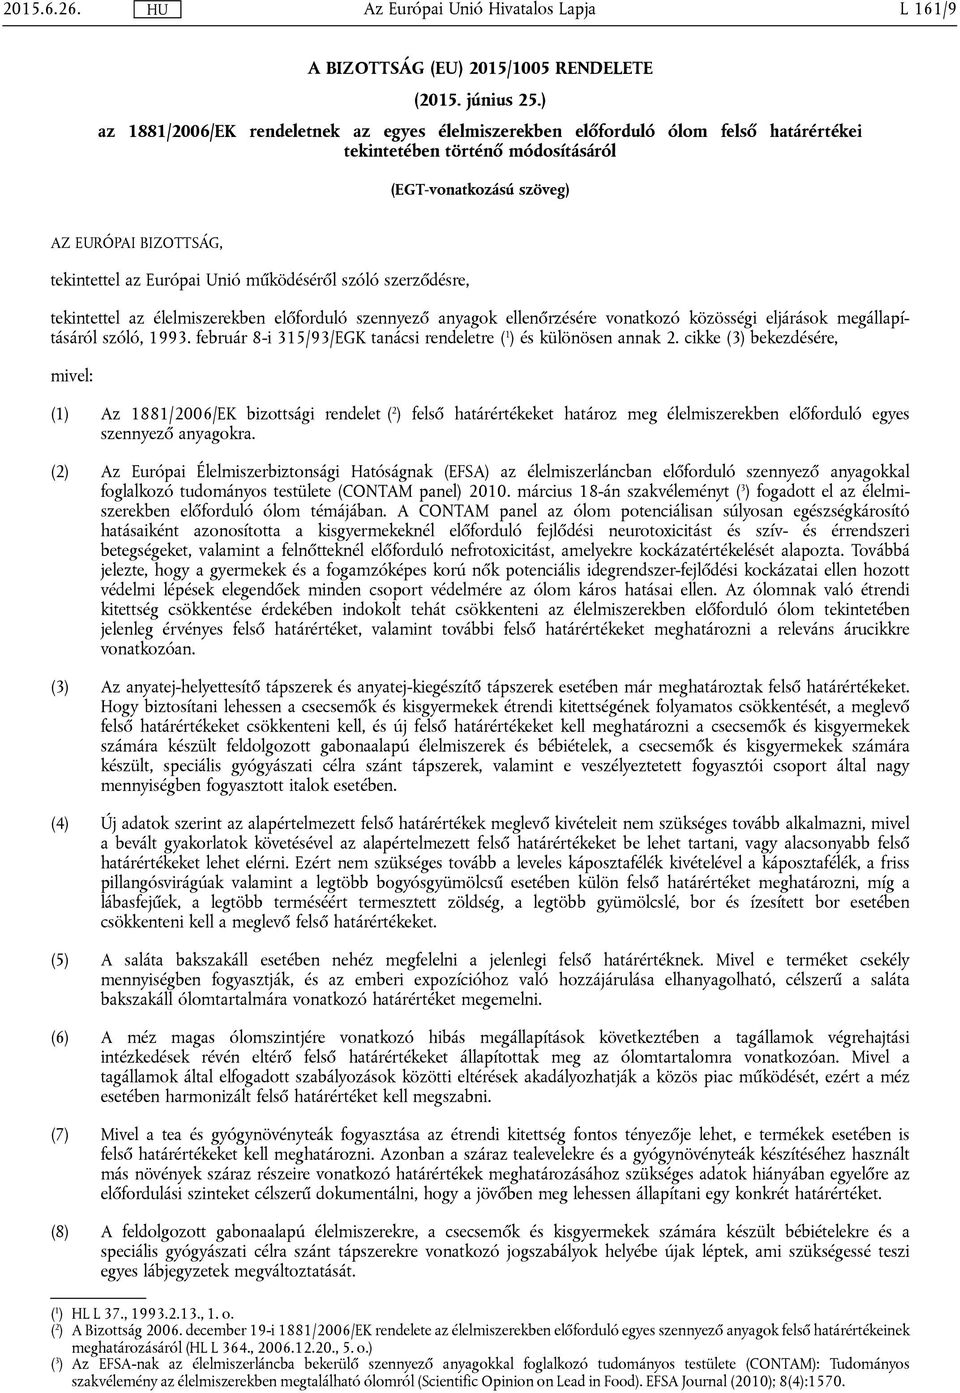 működéséről szóló szerződésre, tekintettel az élelmiszerekben előforduló szennyező anyagok ellenőrzésére vonatkozó közösségi eljárások megállapításáról szóló, 1993.